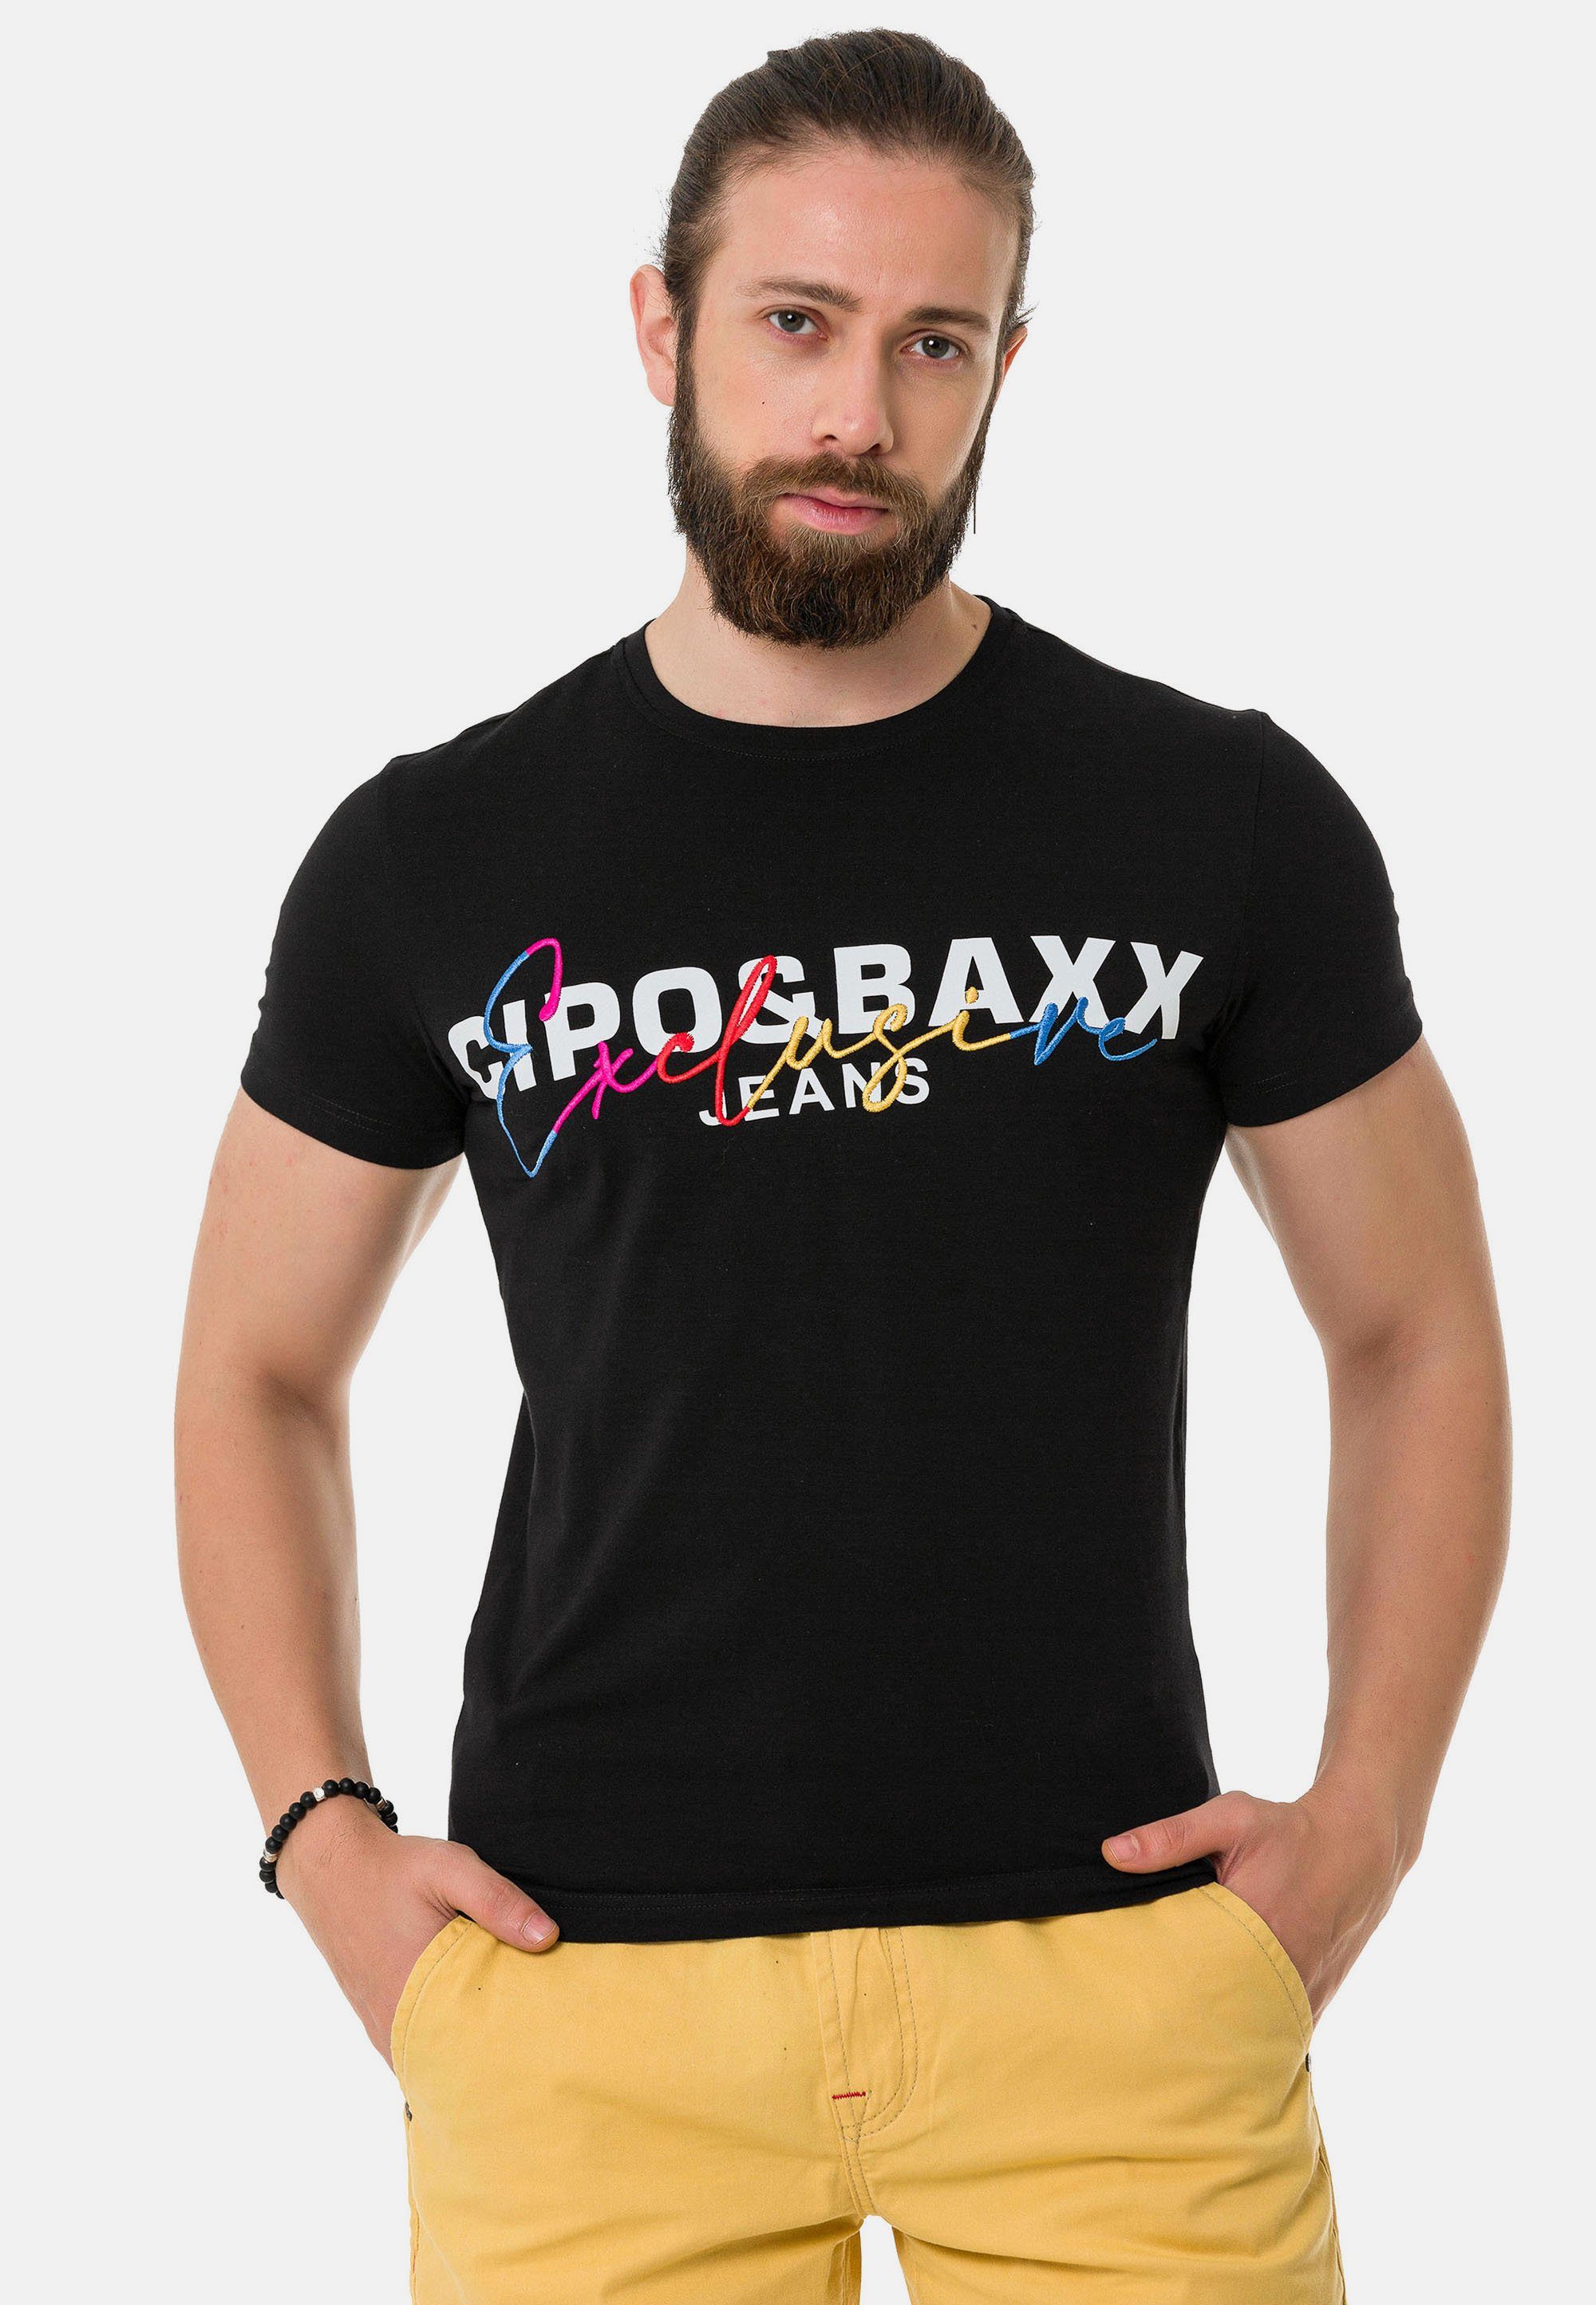 Baxx mit T-Shirt Markenprint schwarz & Cipo